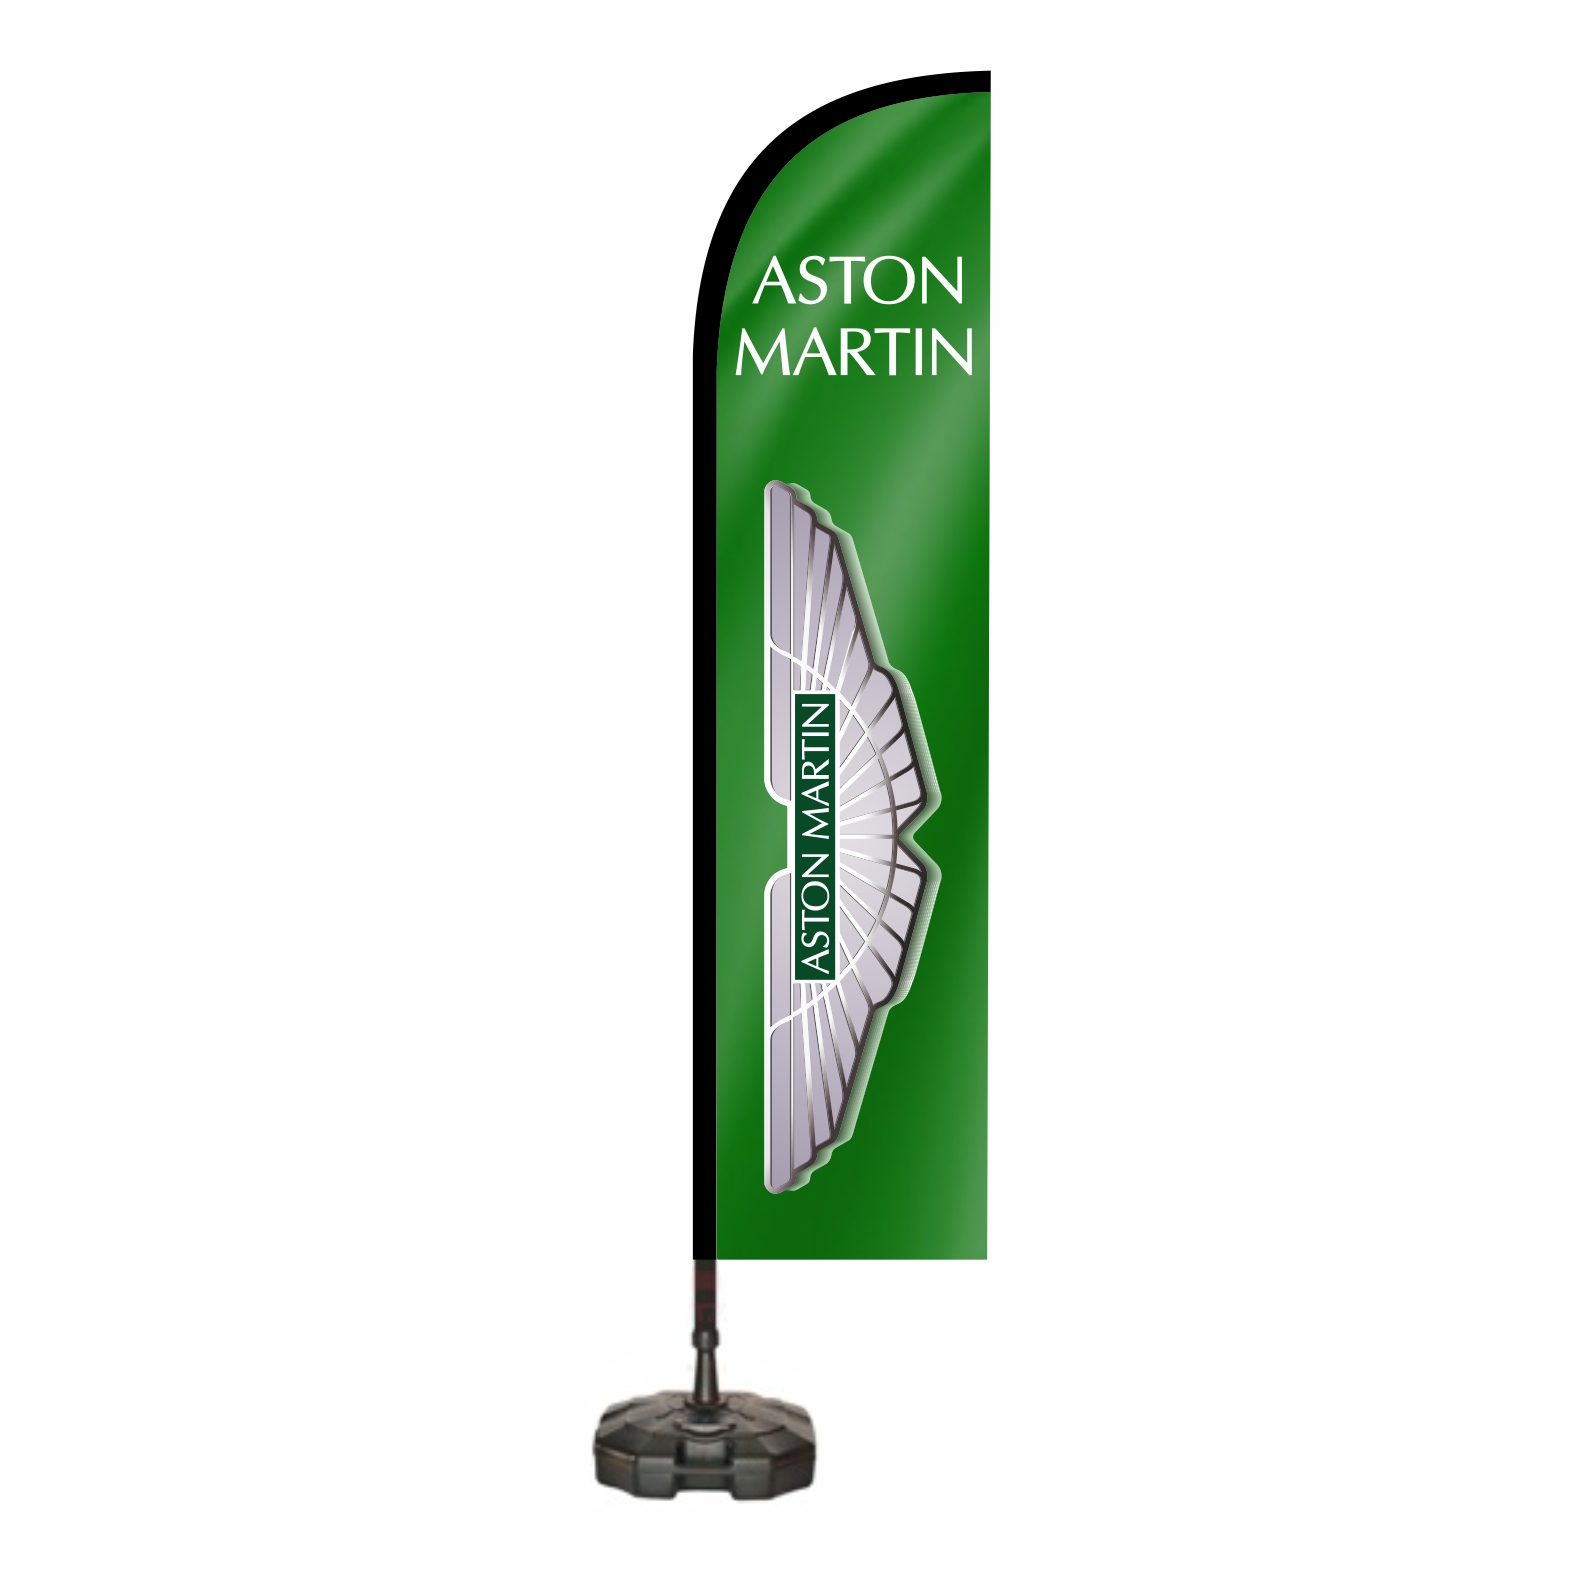 Aston Martin Reklam Bayra zellii